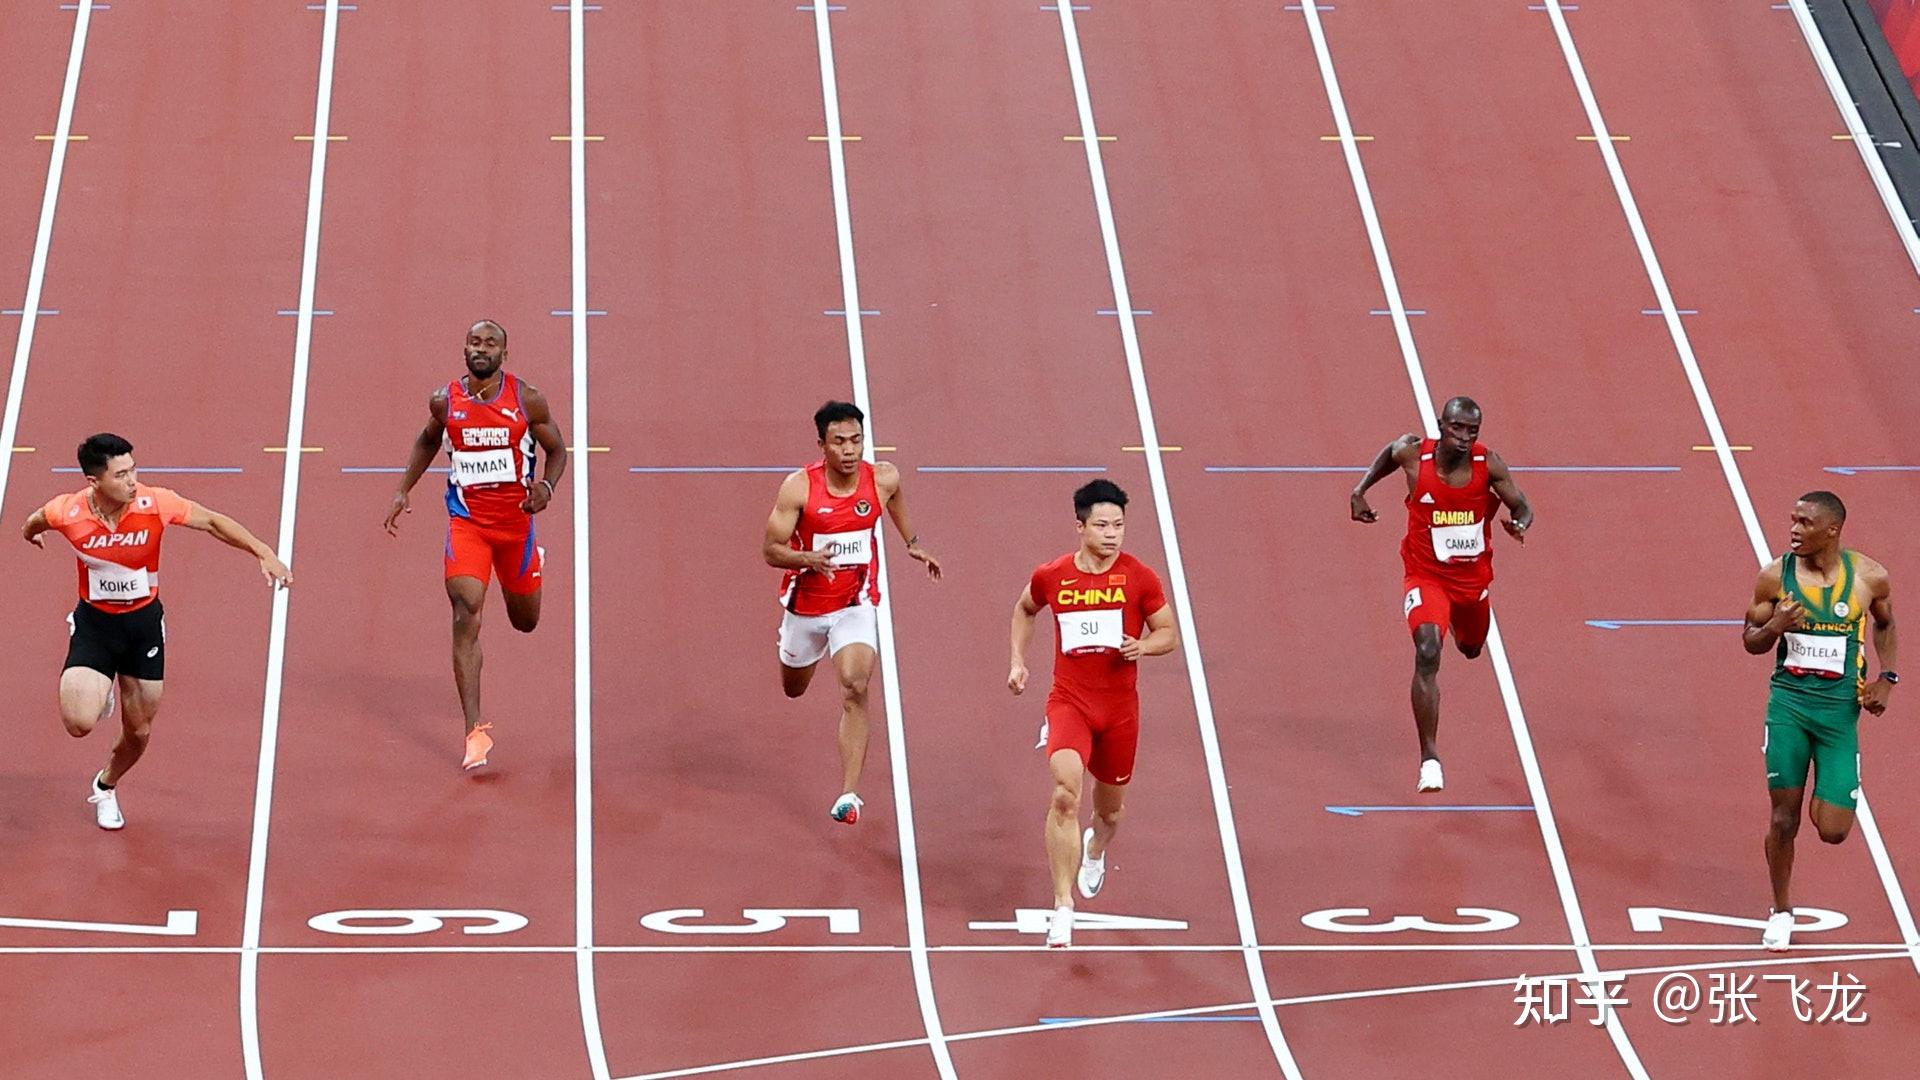 如何评价苏炳添在东京奥运会男子 100 米预赛的表现?